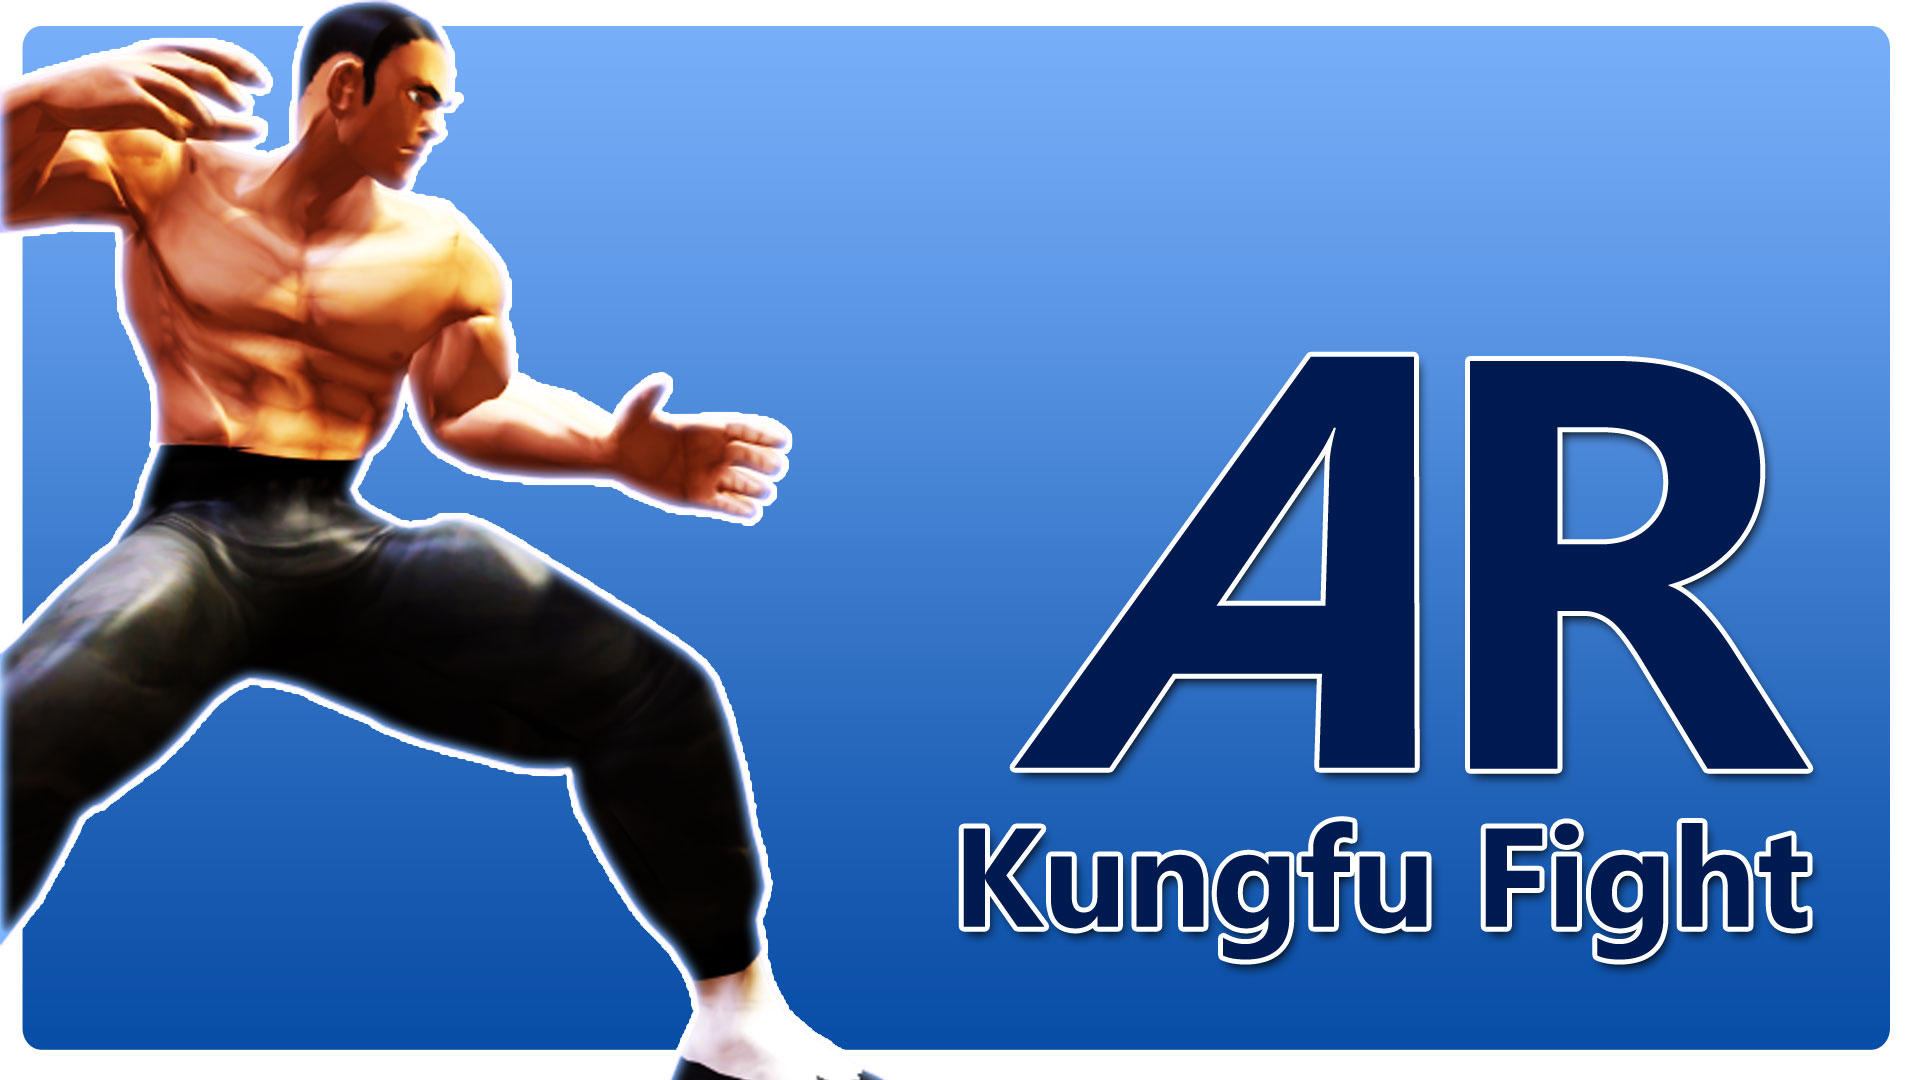 Banner of Combat de Kung Fu AR 